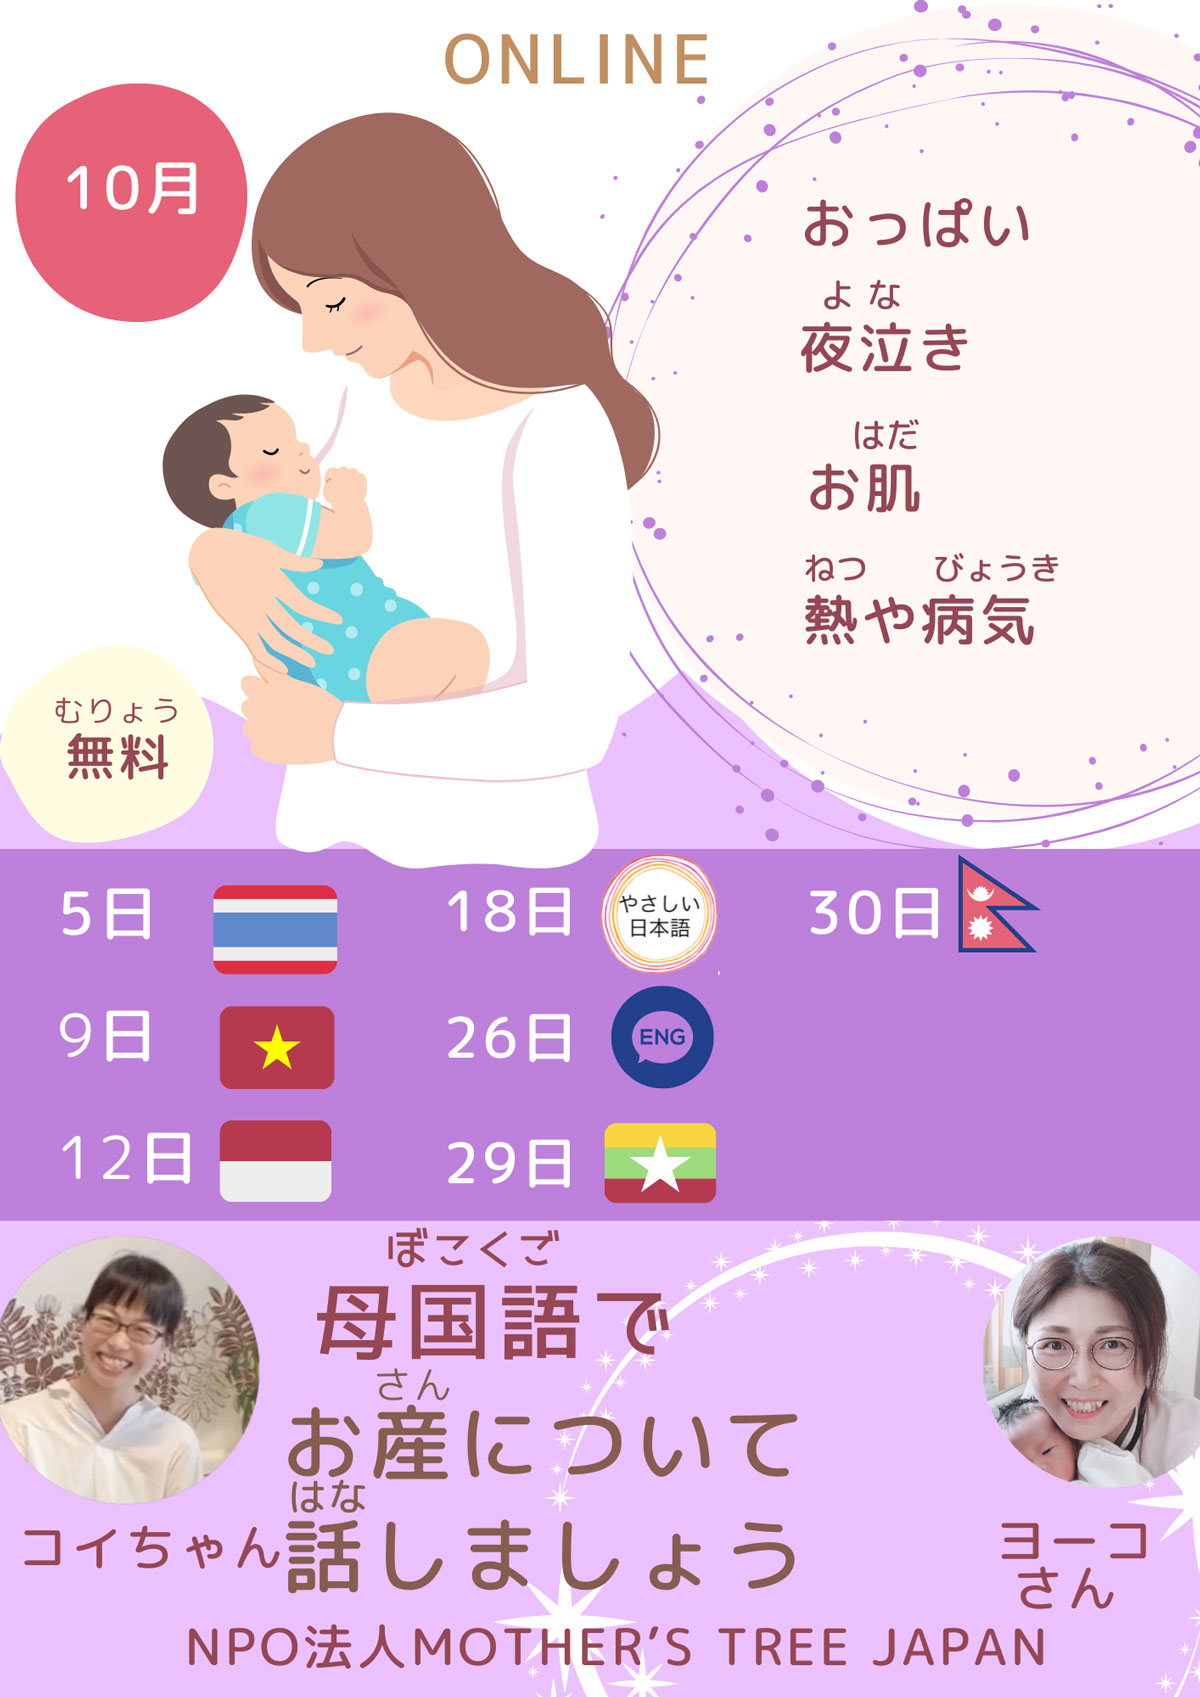 让我们用您的母语谈论怀孕和分娩